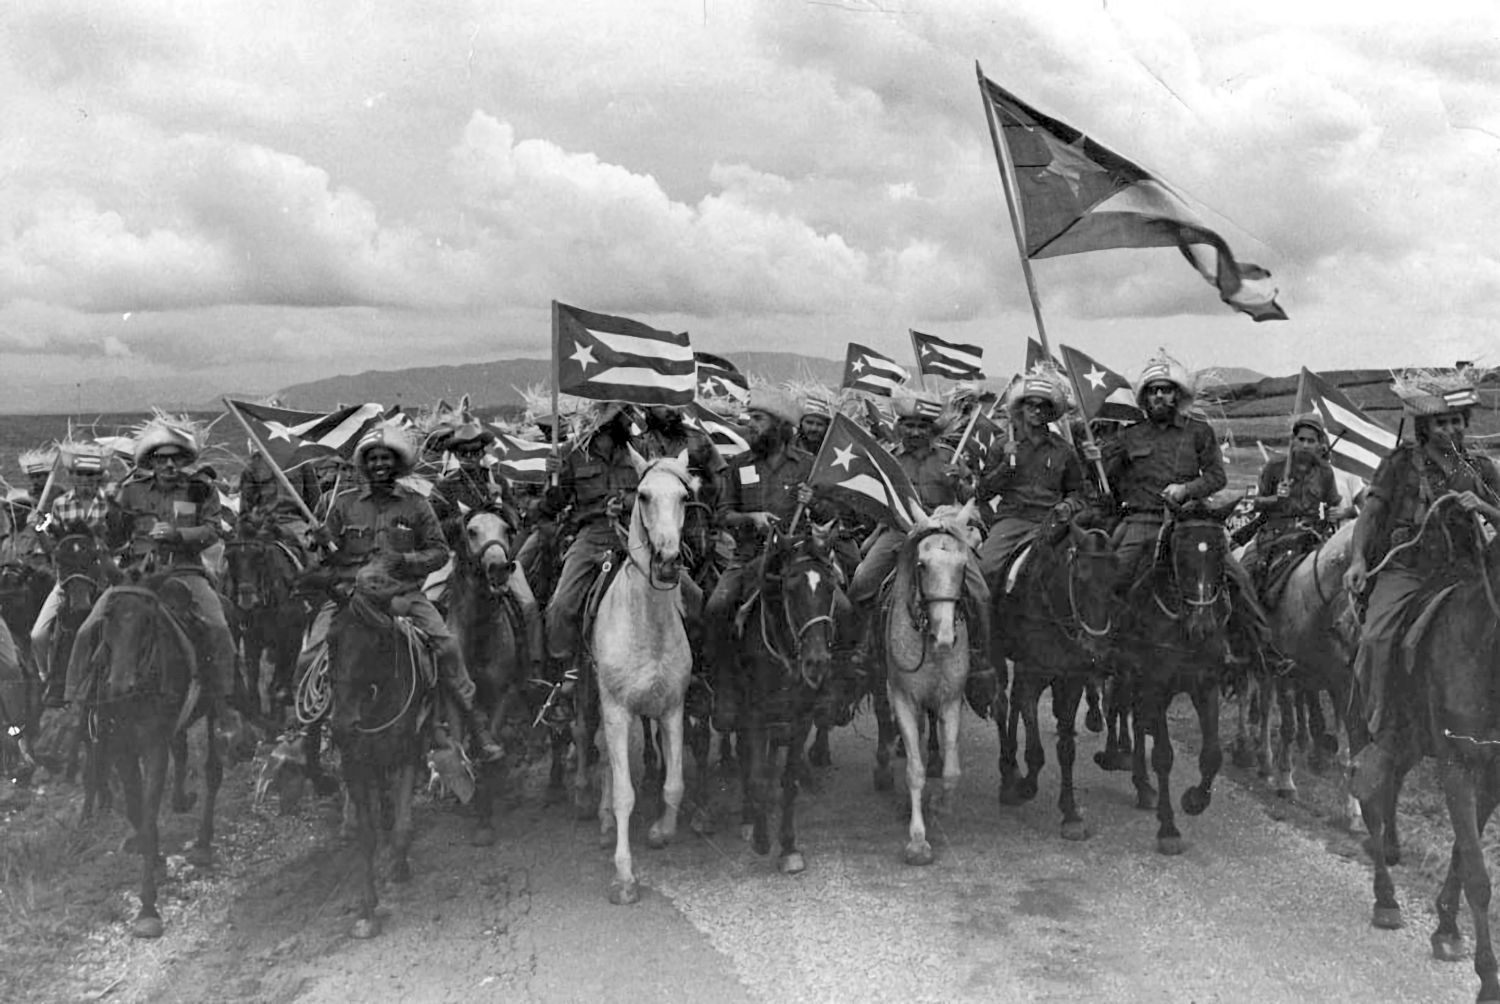 Raúl Corrales Fornos berühmtes Bild der siegreichen kubanischen Revolution von 1959